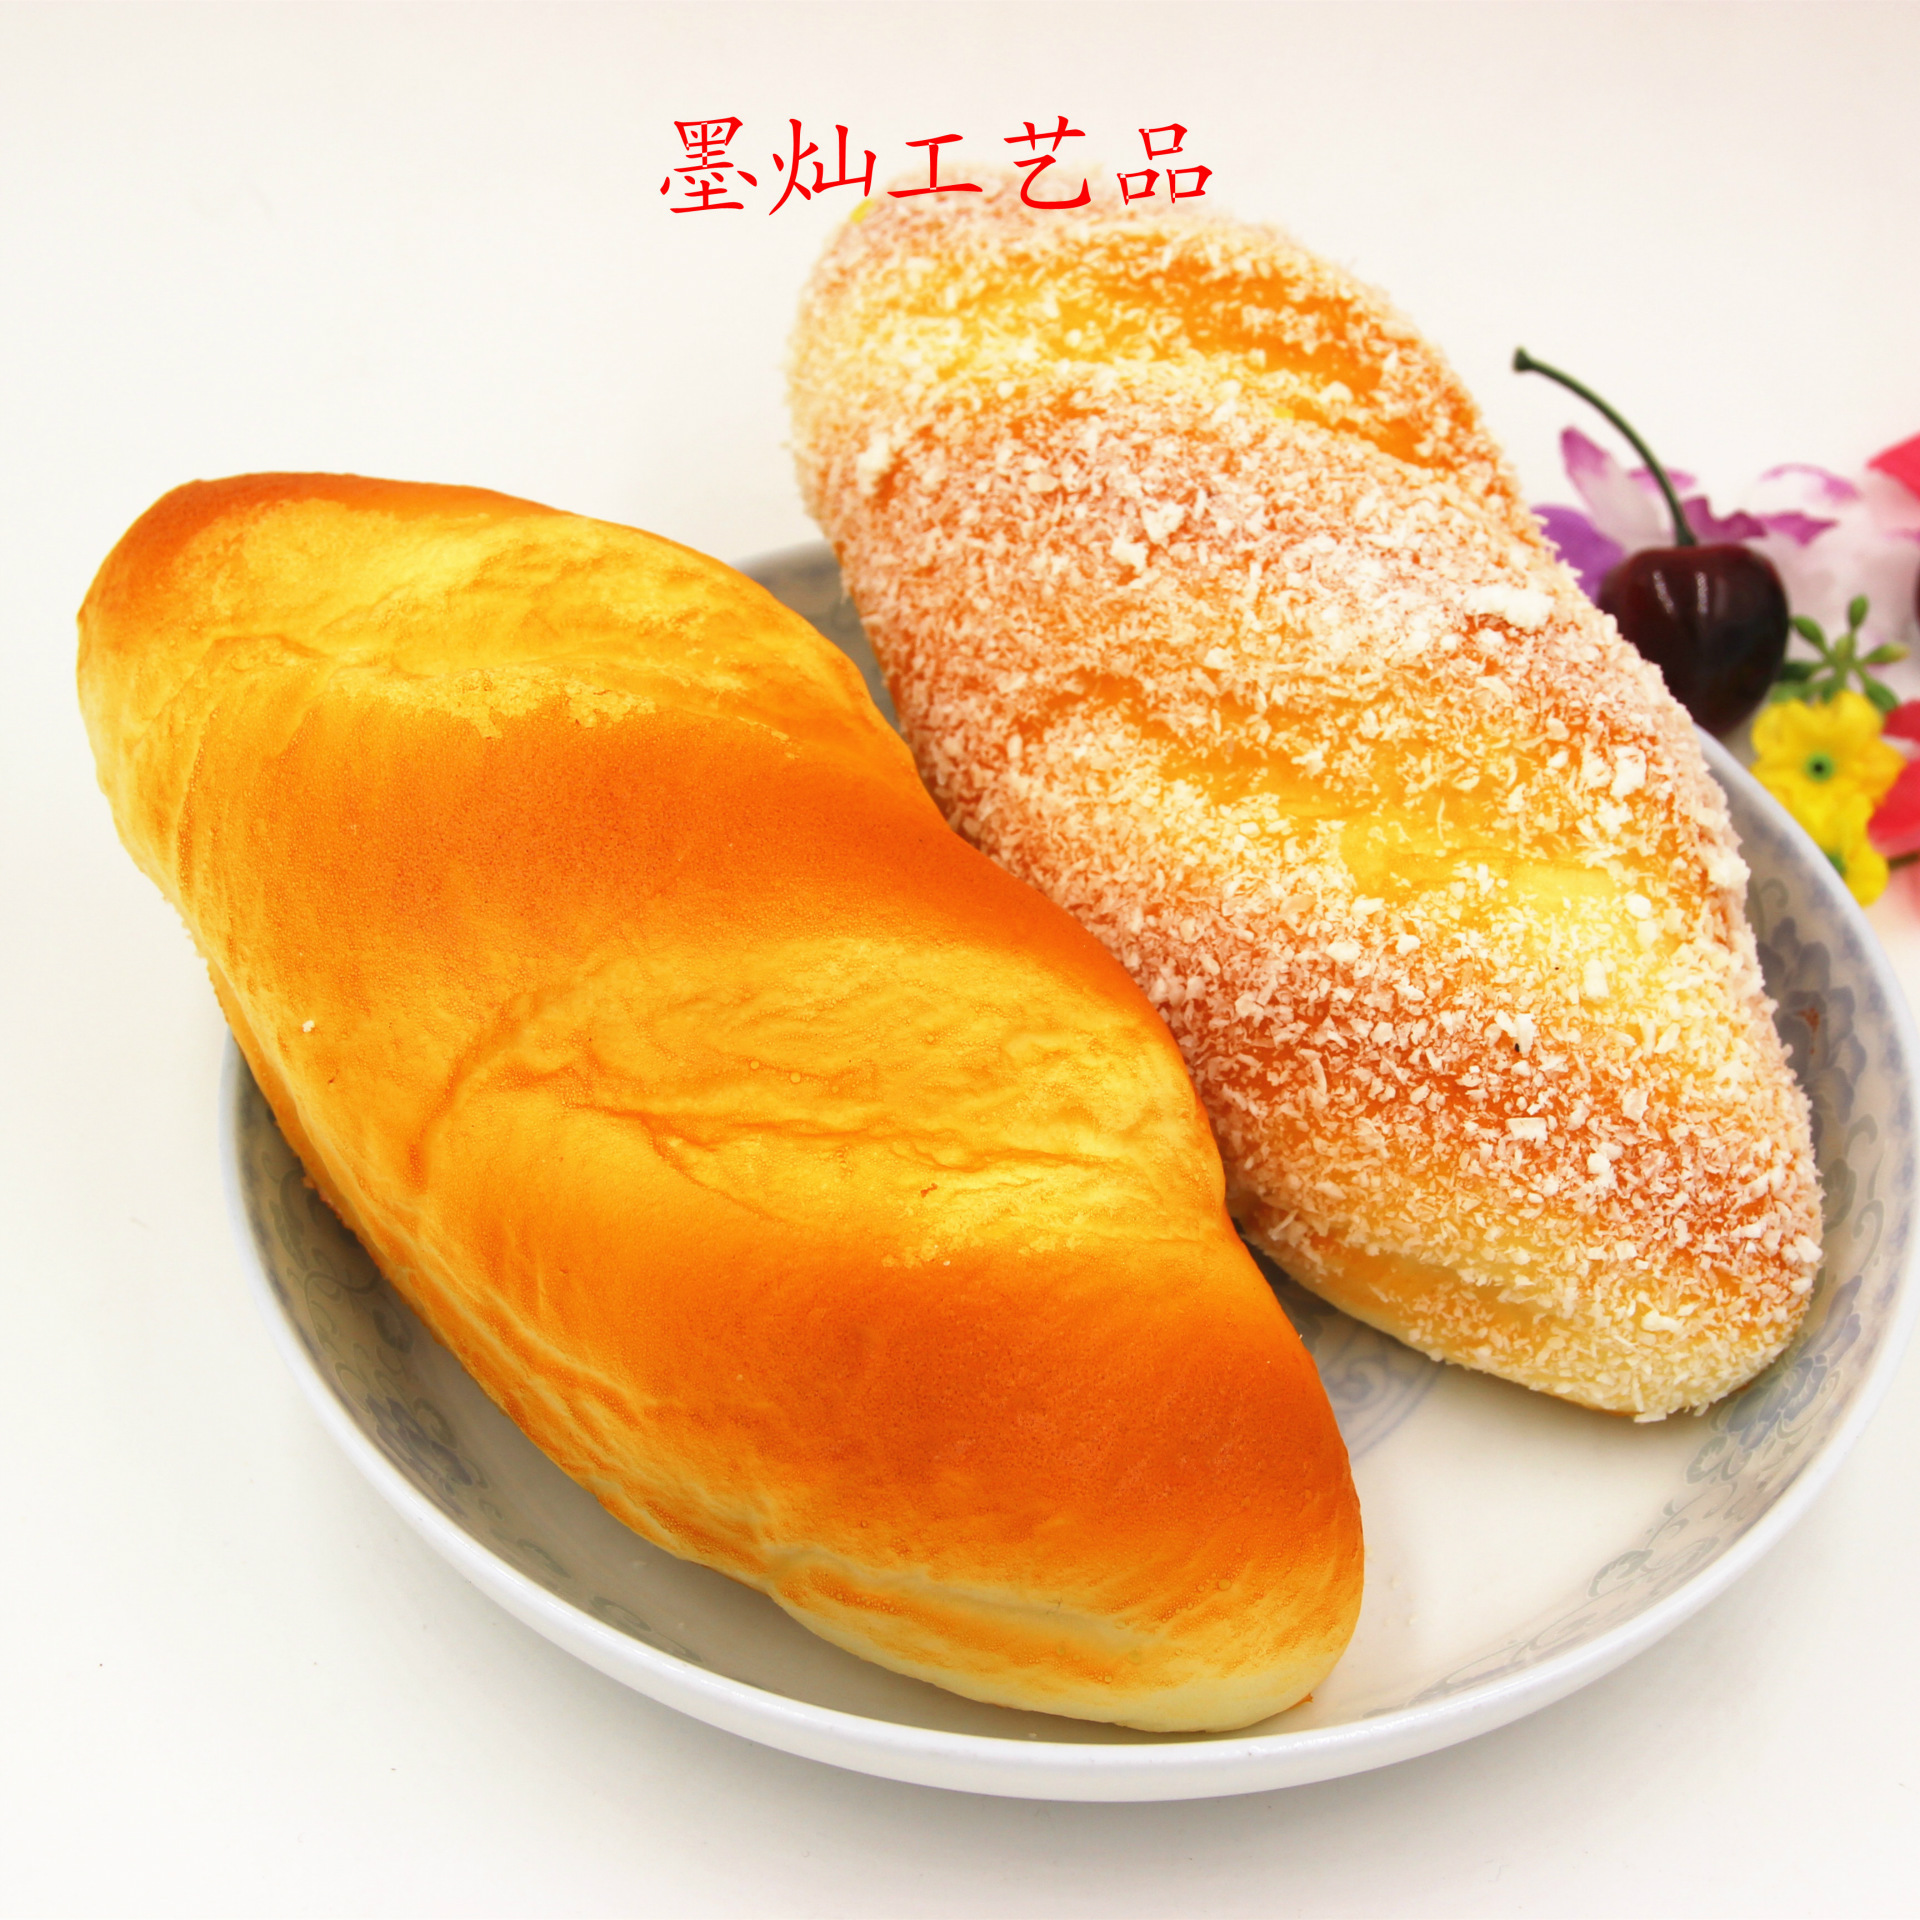 加了淡奶油的面包组织更细腻,松软可口_奶香软面包_美食图片